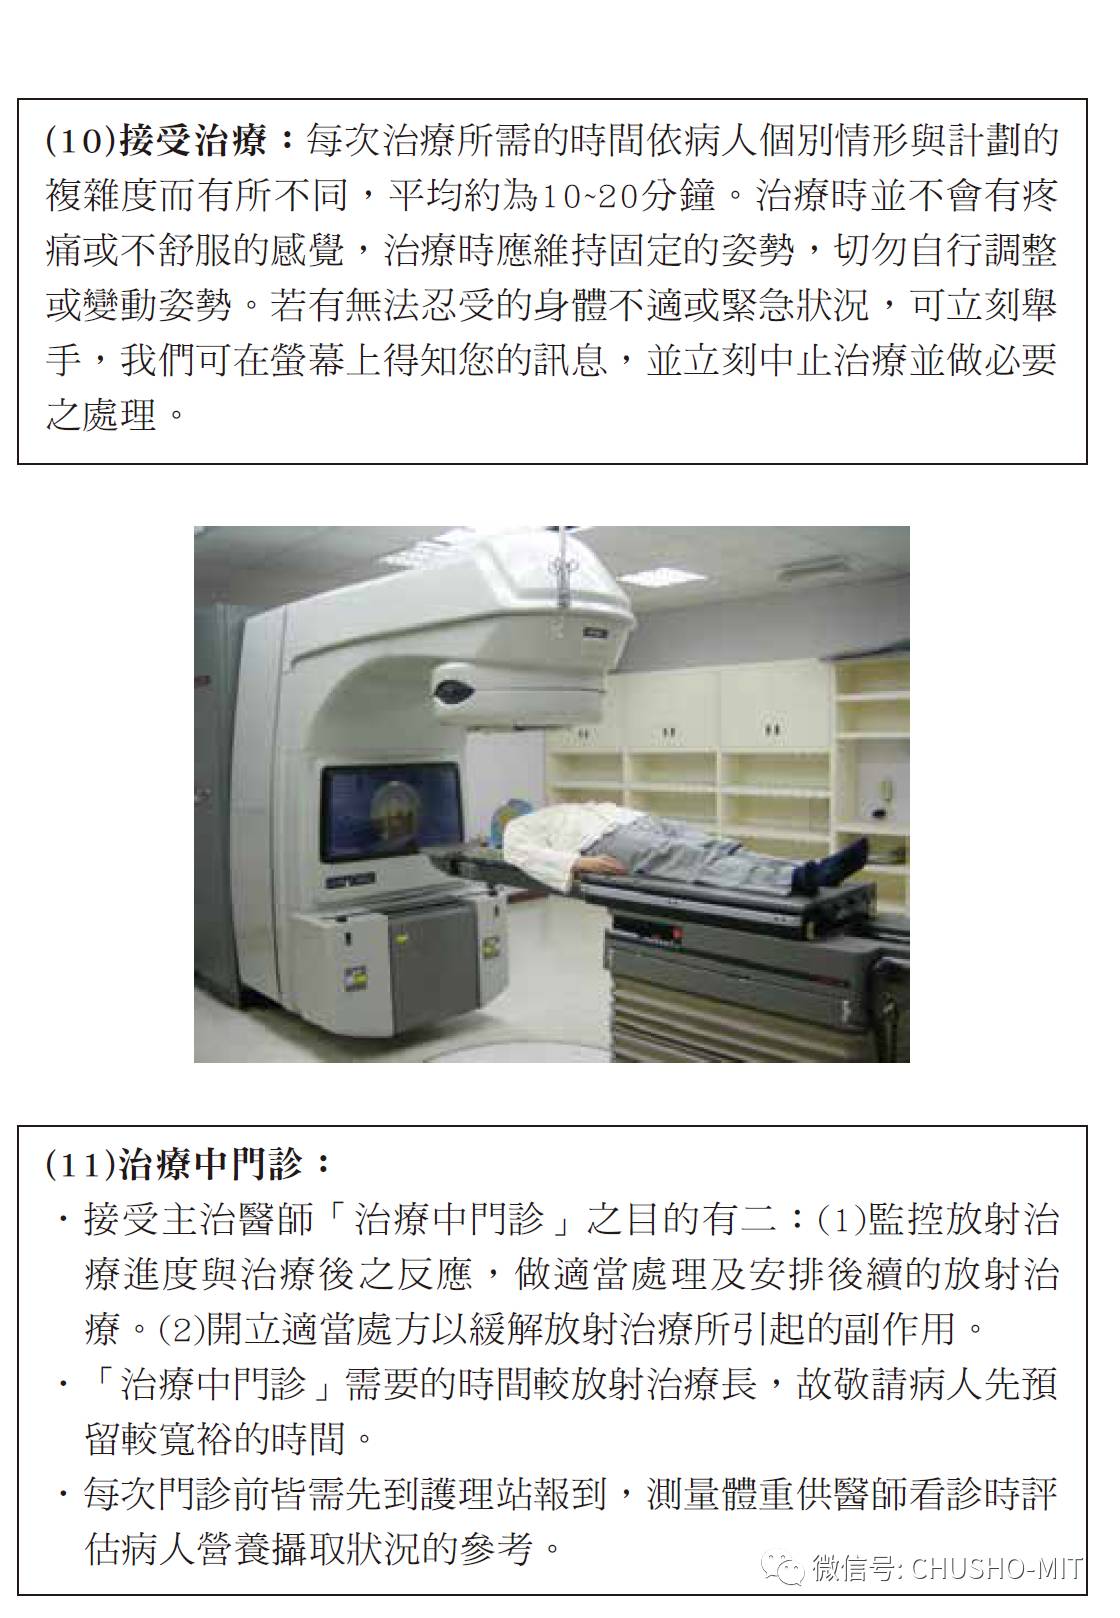 台湾长庚癌症治 疗中心